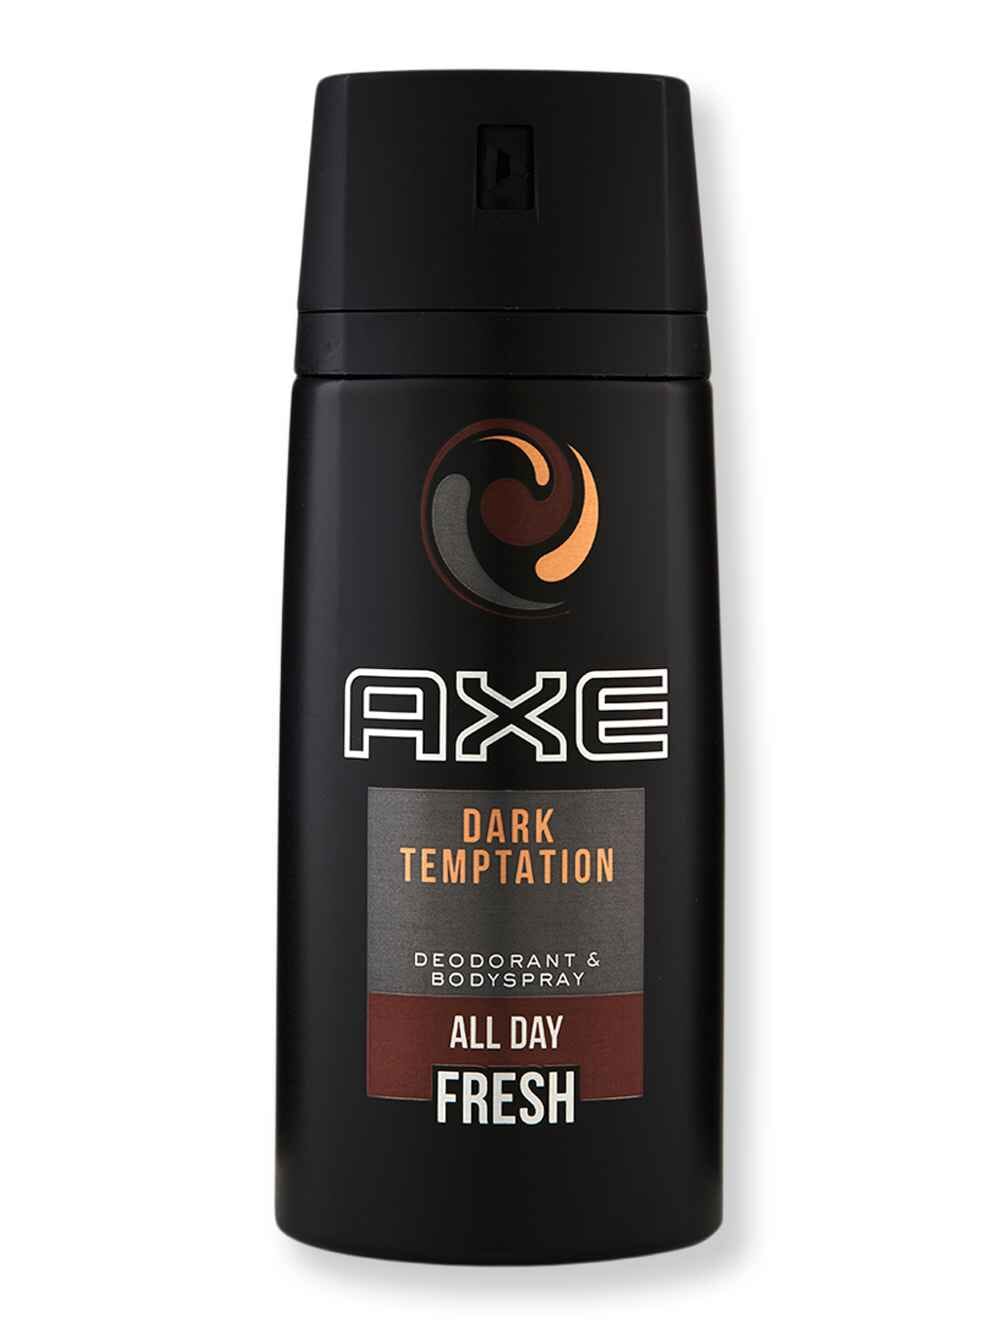 AXE AXE Spray Dark Temptation 5.1 oz150 ml Perfumes & Colognes 